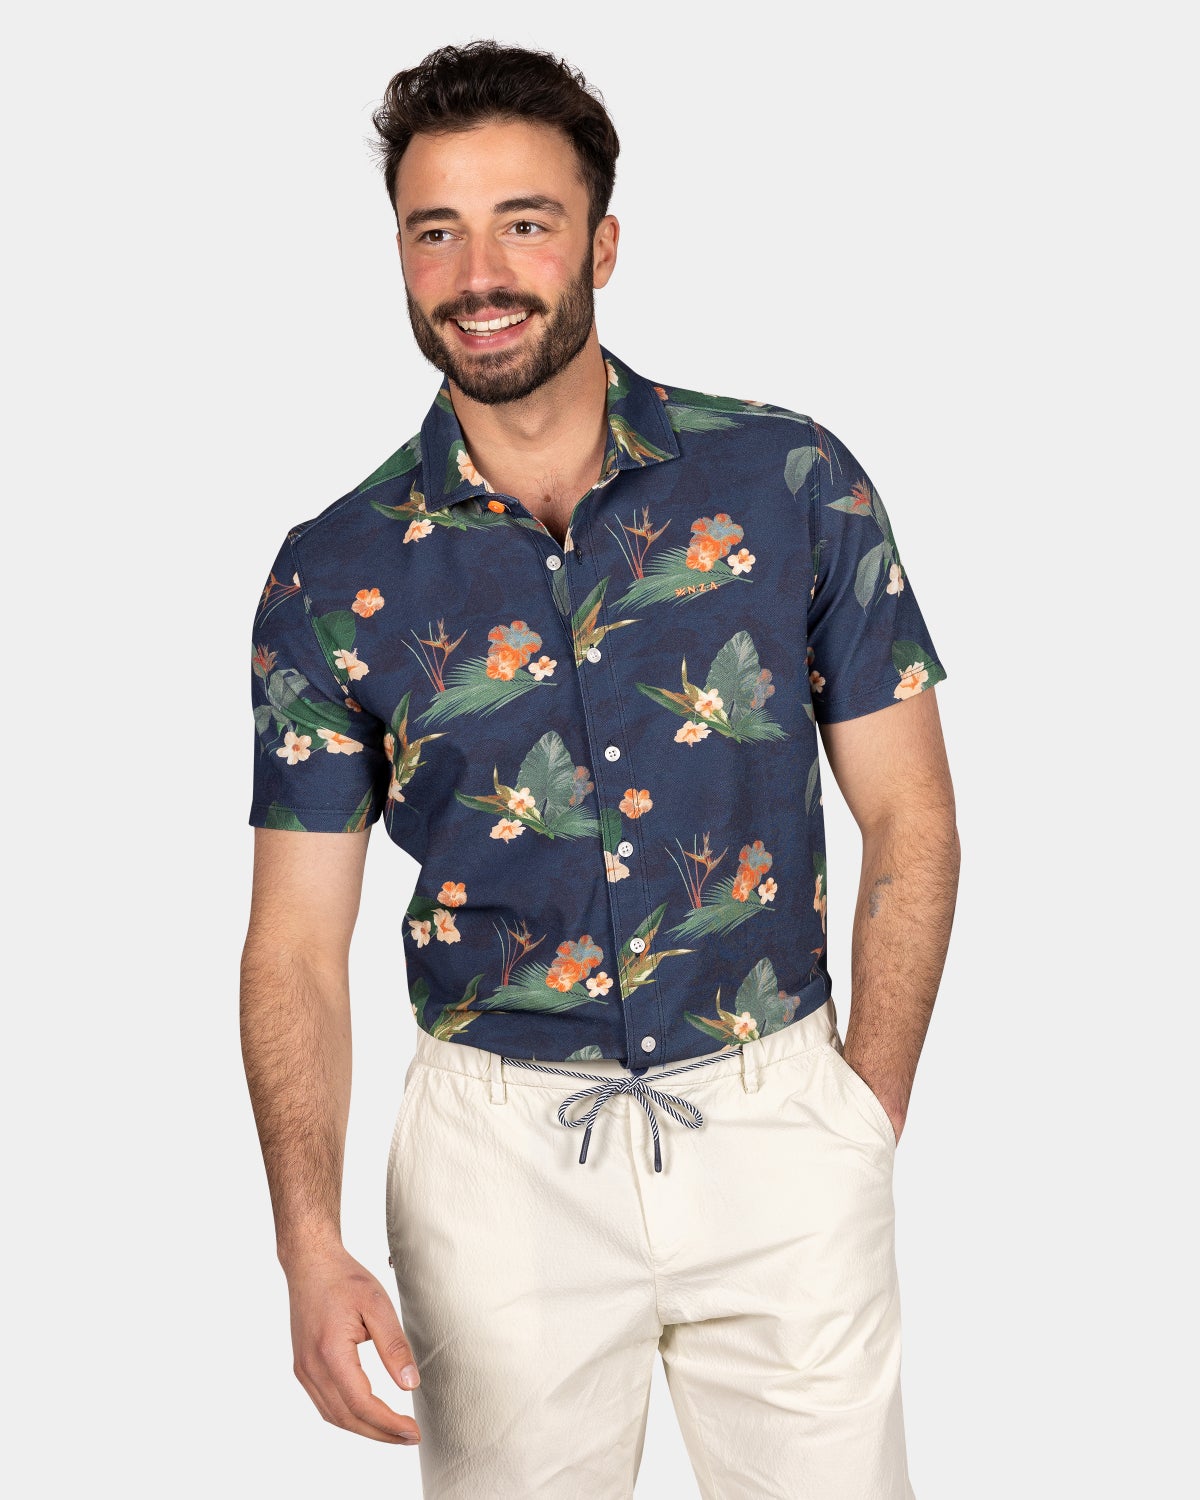 Dunkelblaues Hemd mit groﾧen Blumen - Ocean Navy